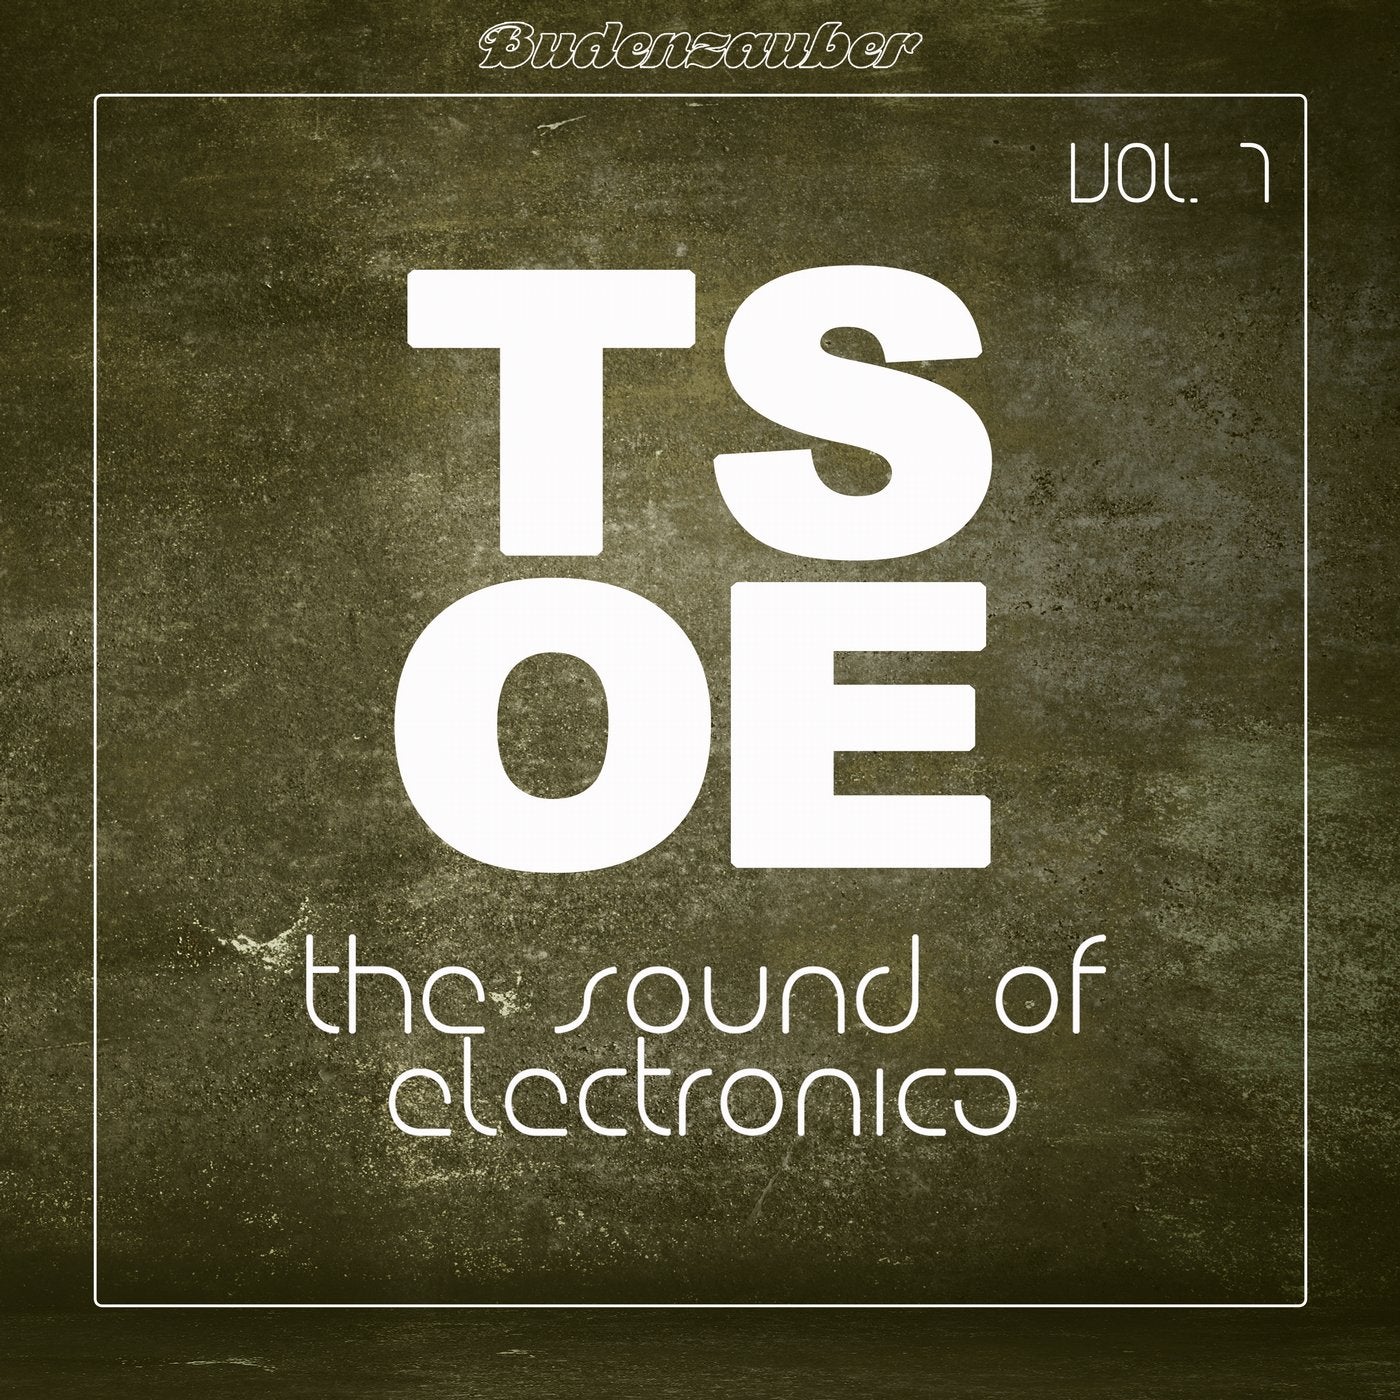 TSOE (The Sound of Electronica), Vol. 7